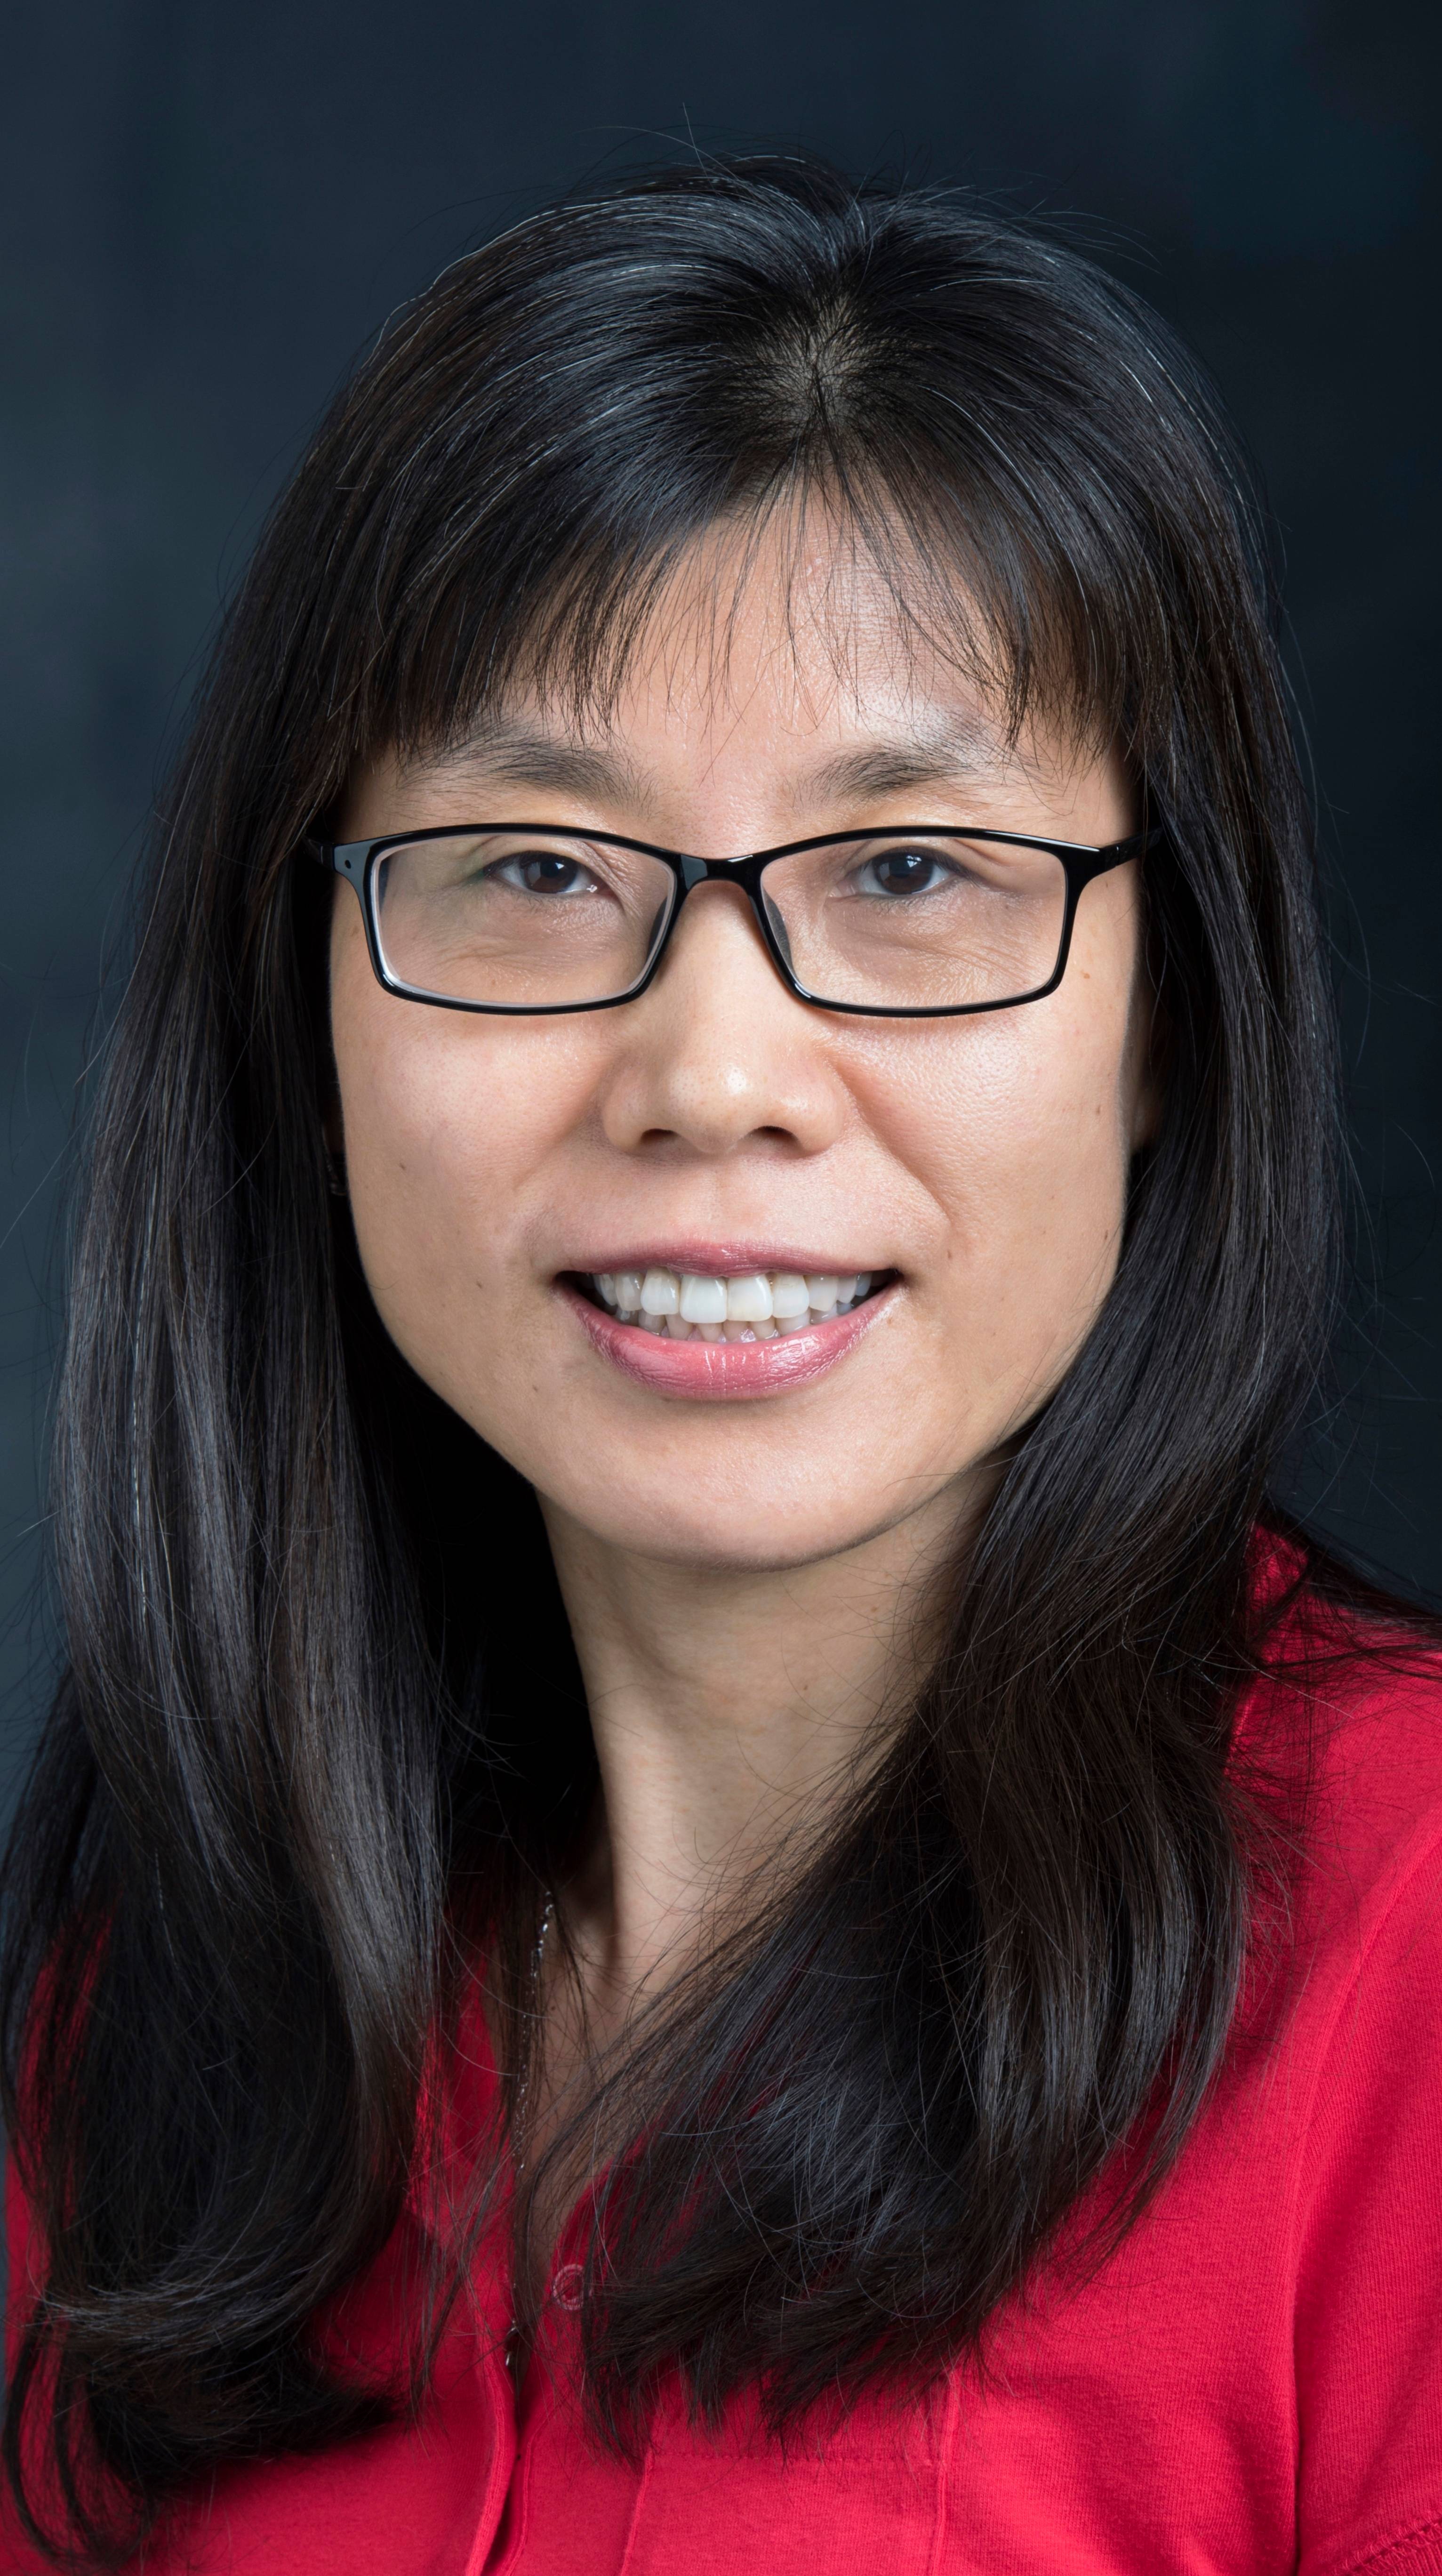 Dr. Ting Liu